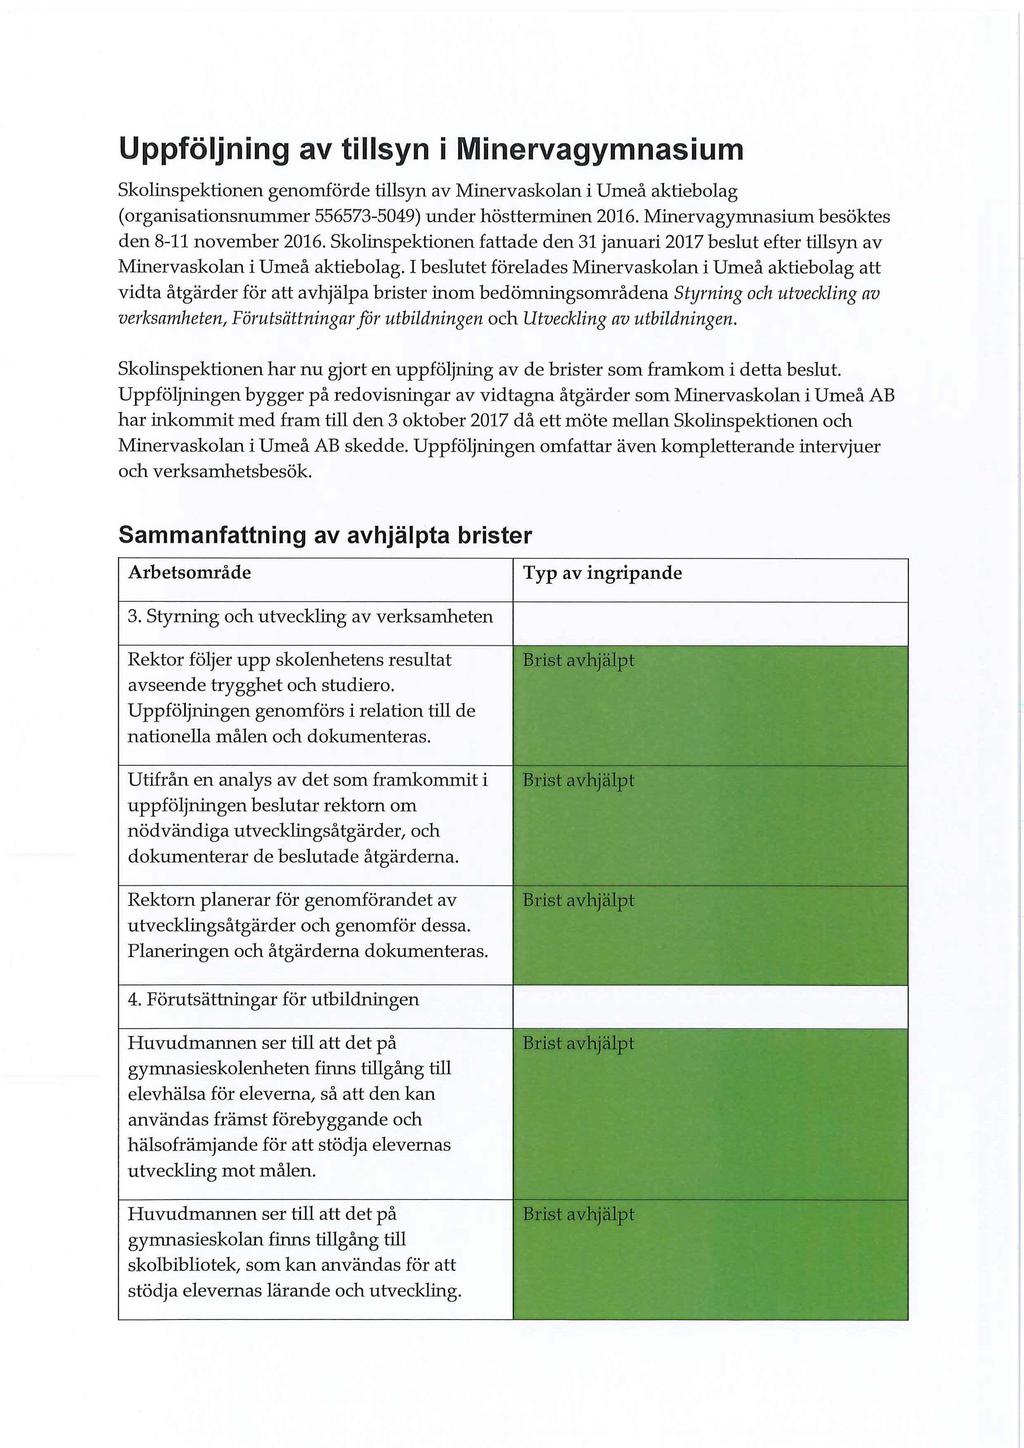 Uppföljning av tillsyn i Minervagymnasium Skolinspektionen genomförde tillsyn av Minervaskolan i Umeå aktiebolag (organisationsnummer 556573-5049) under höstterminen 2016.